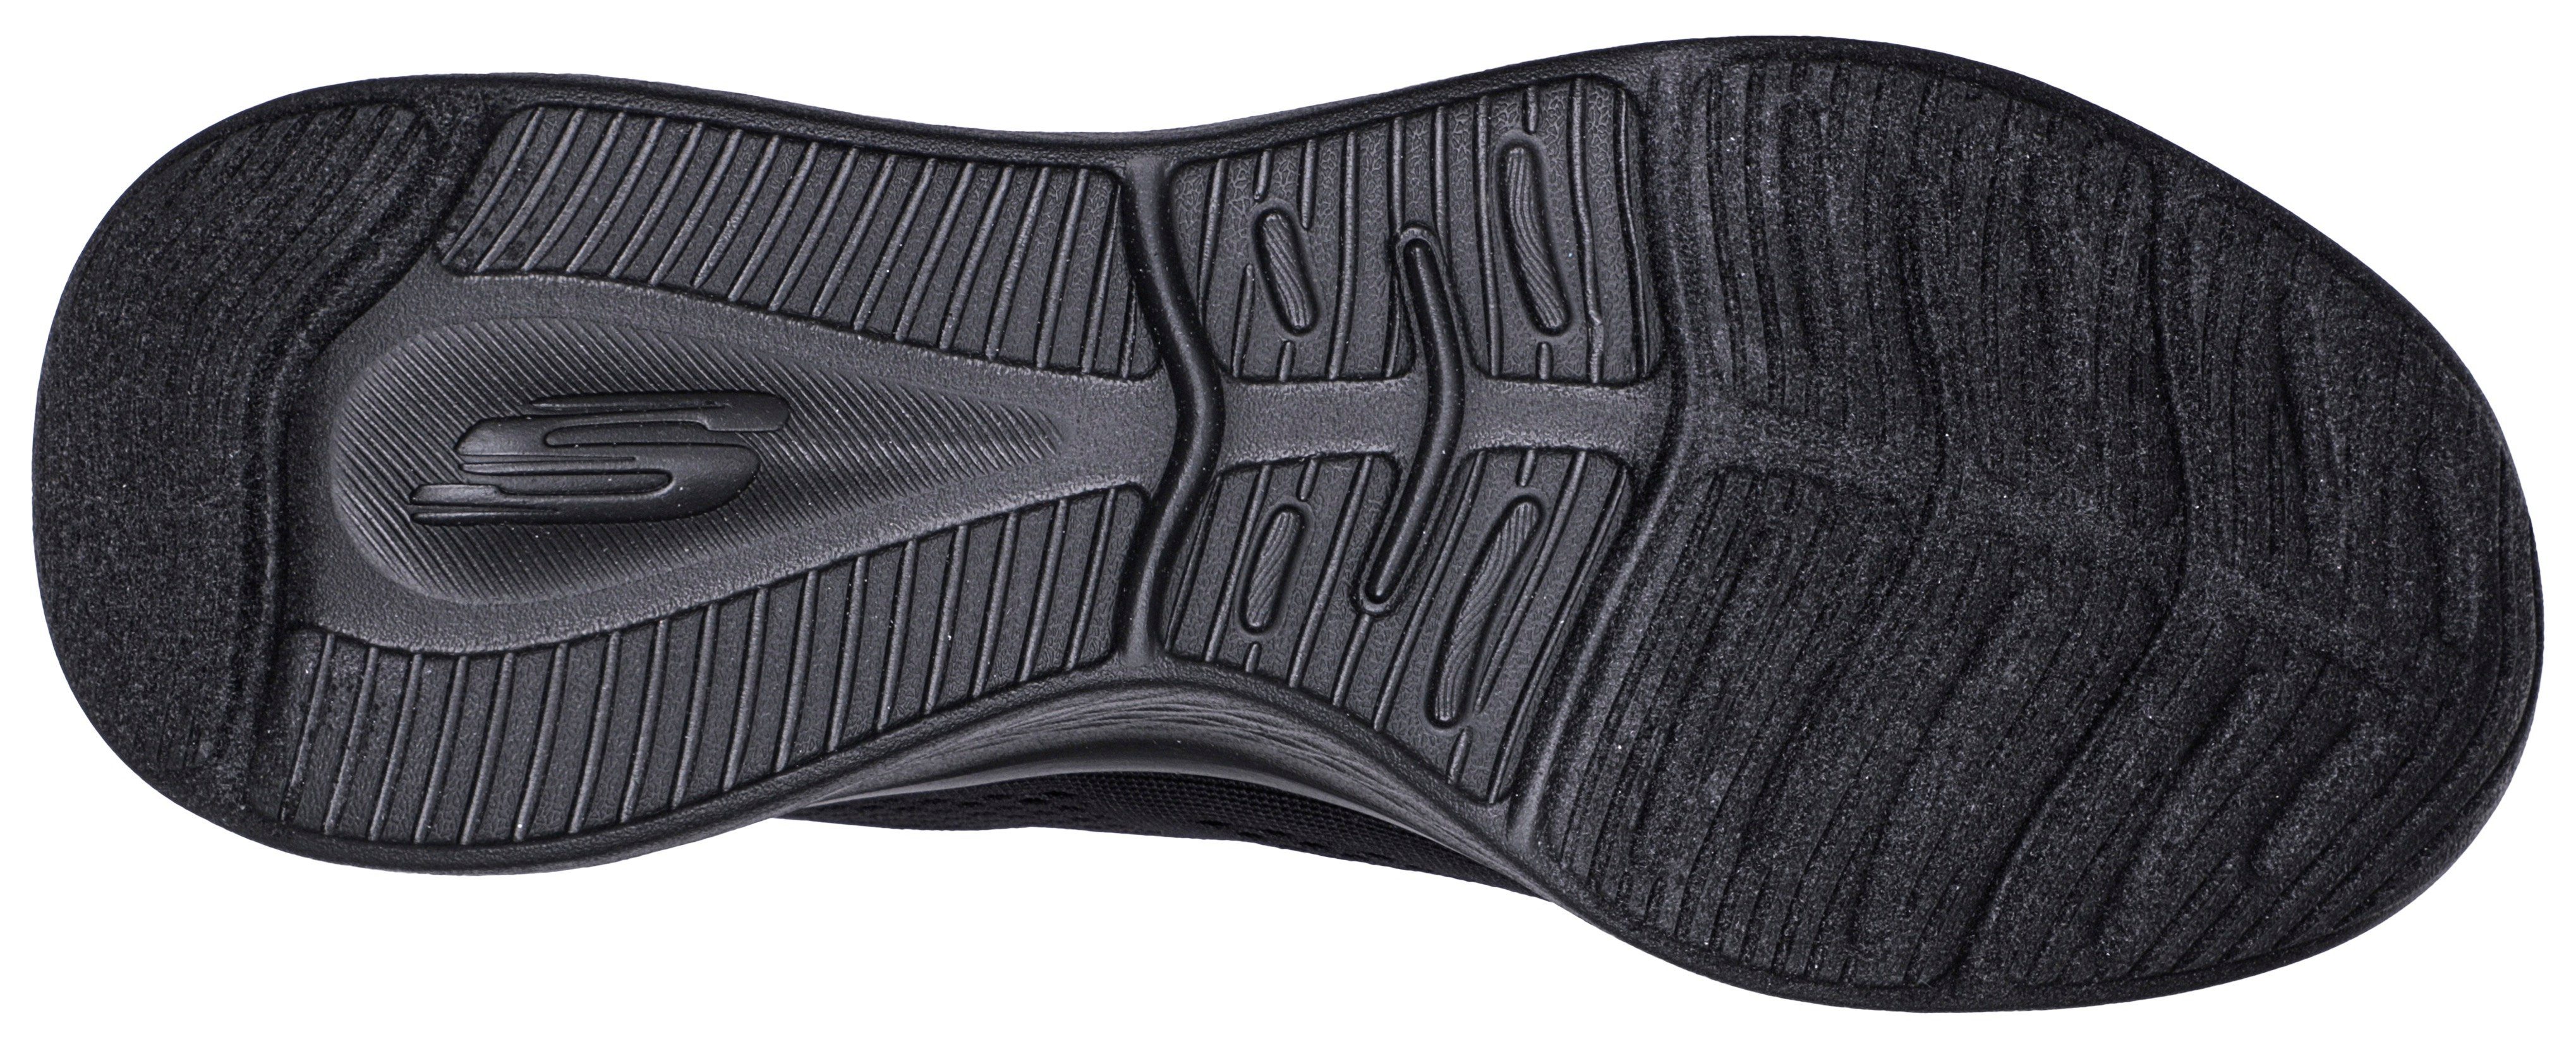 PRO Skechers - schwarz Sneaker SKECH-LITE geeignet für Maschinenwäsche